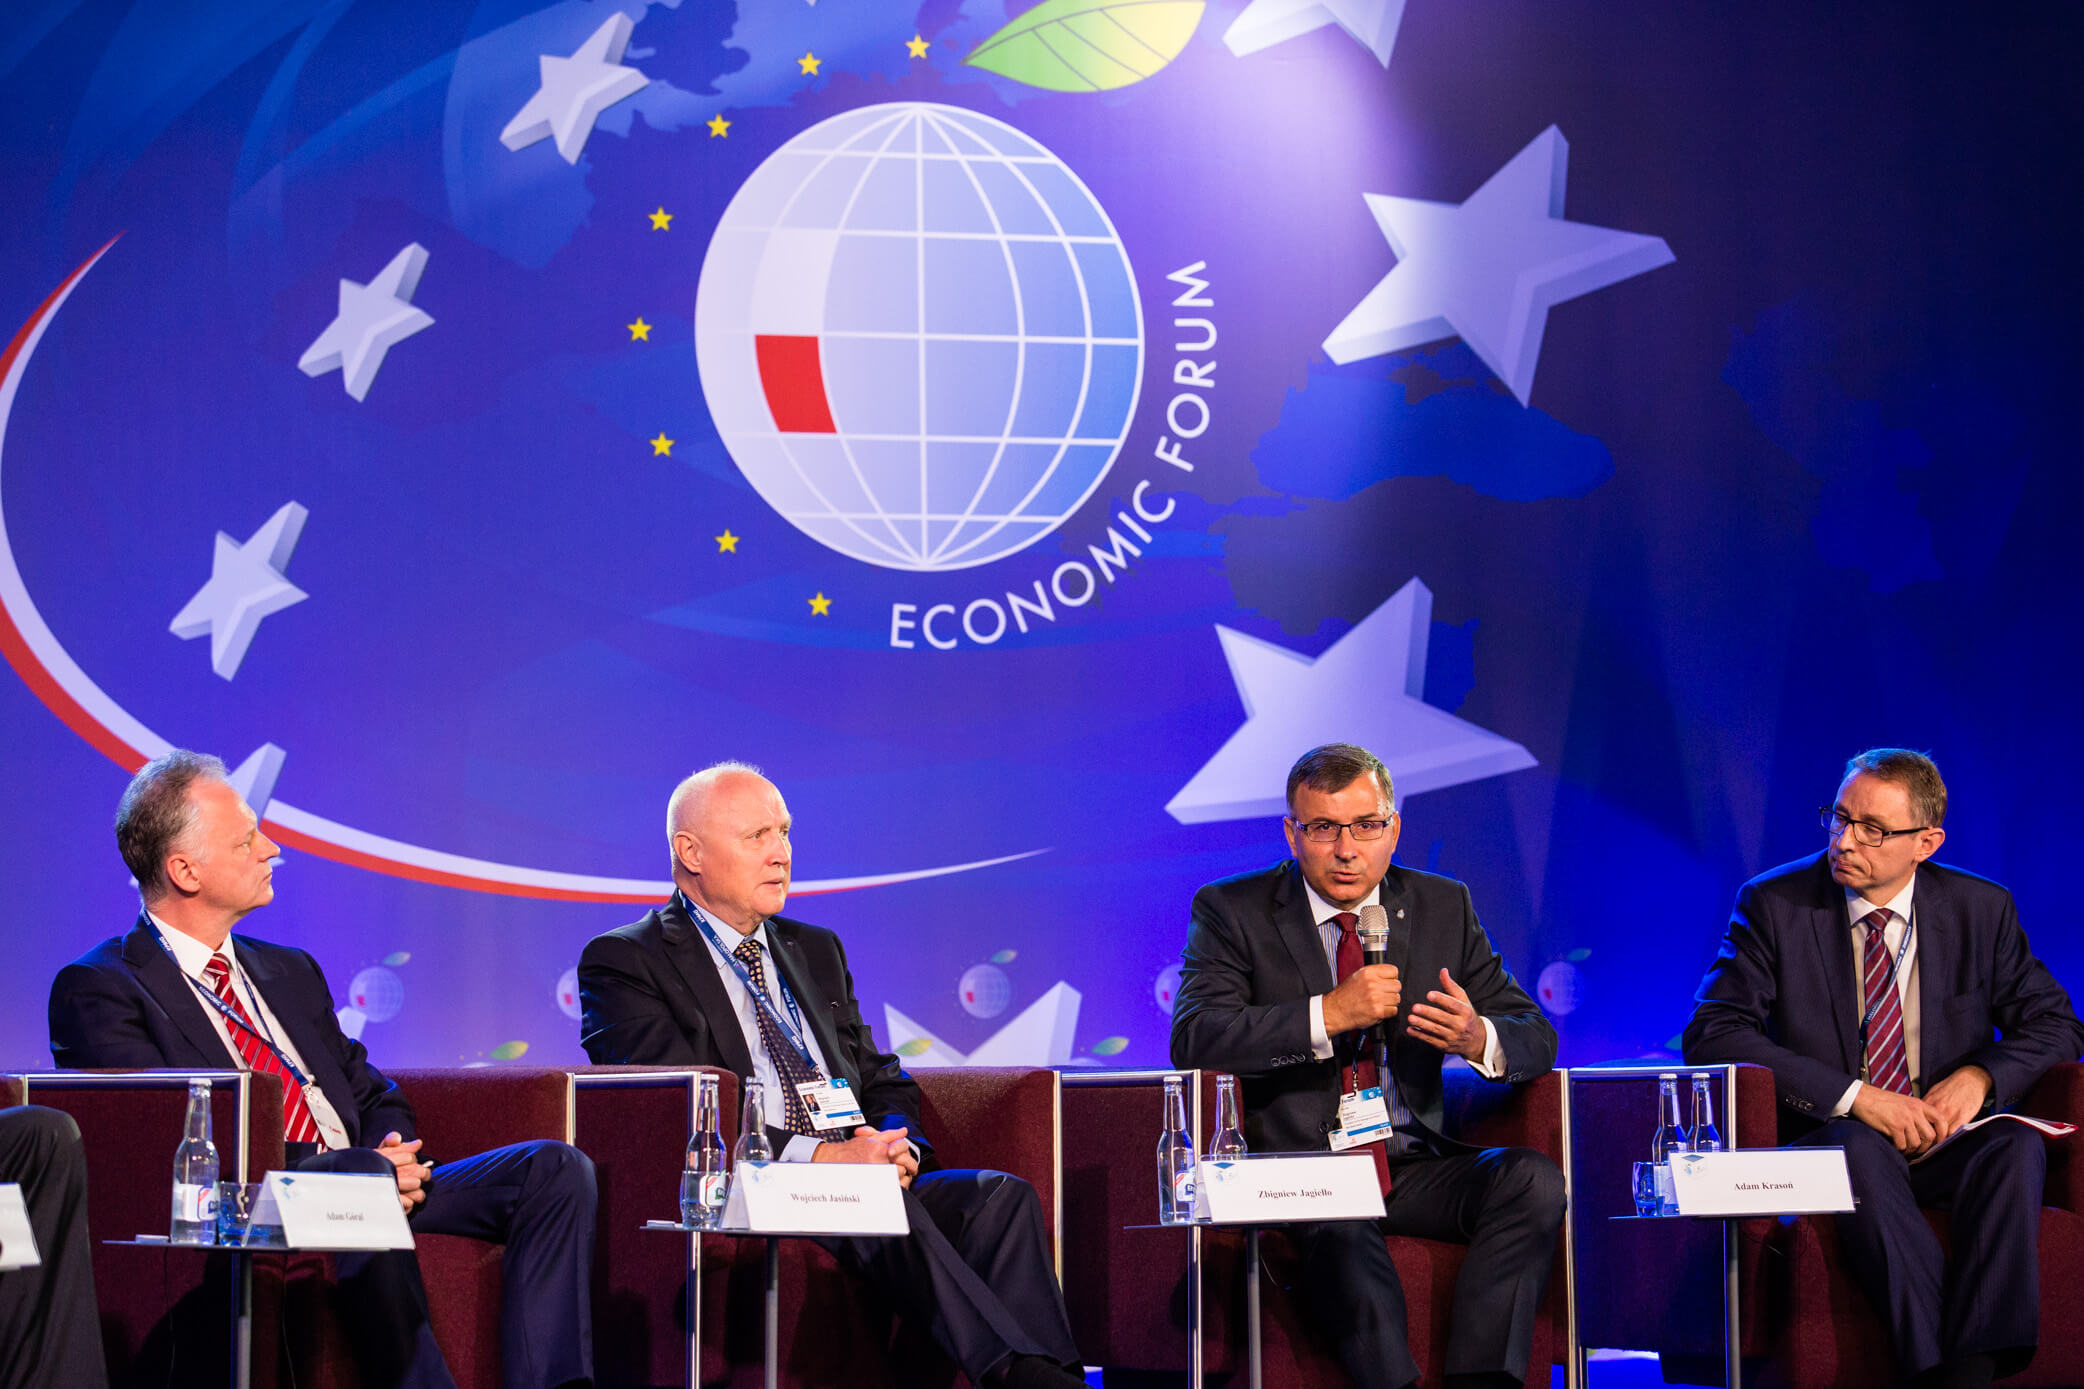 Организаторы экономического форума в Польше: "Одним из важнейших гостей будет создатель политических перемен на Южном Кавказе, Никол Пашинян" 